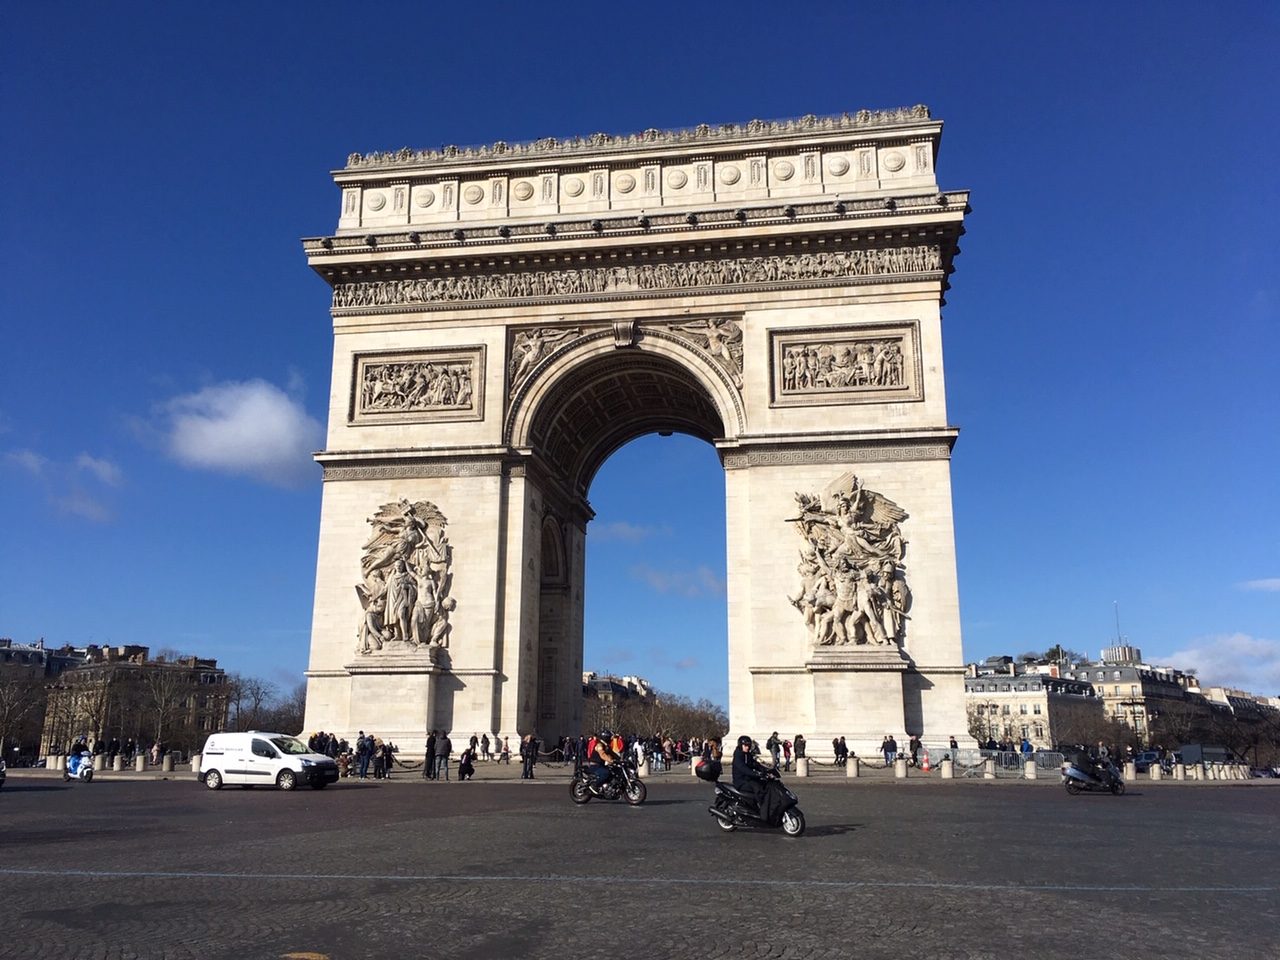 ประตูชัยฝรั่งเศส-ในกรุงปารีส